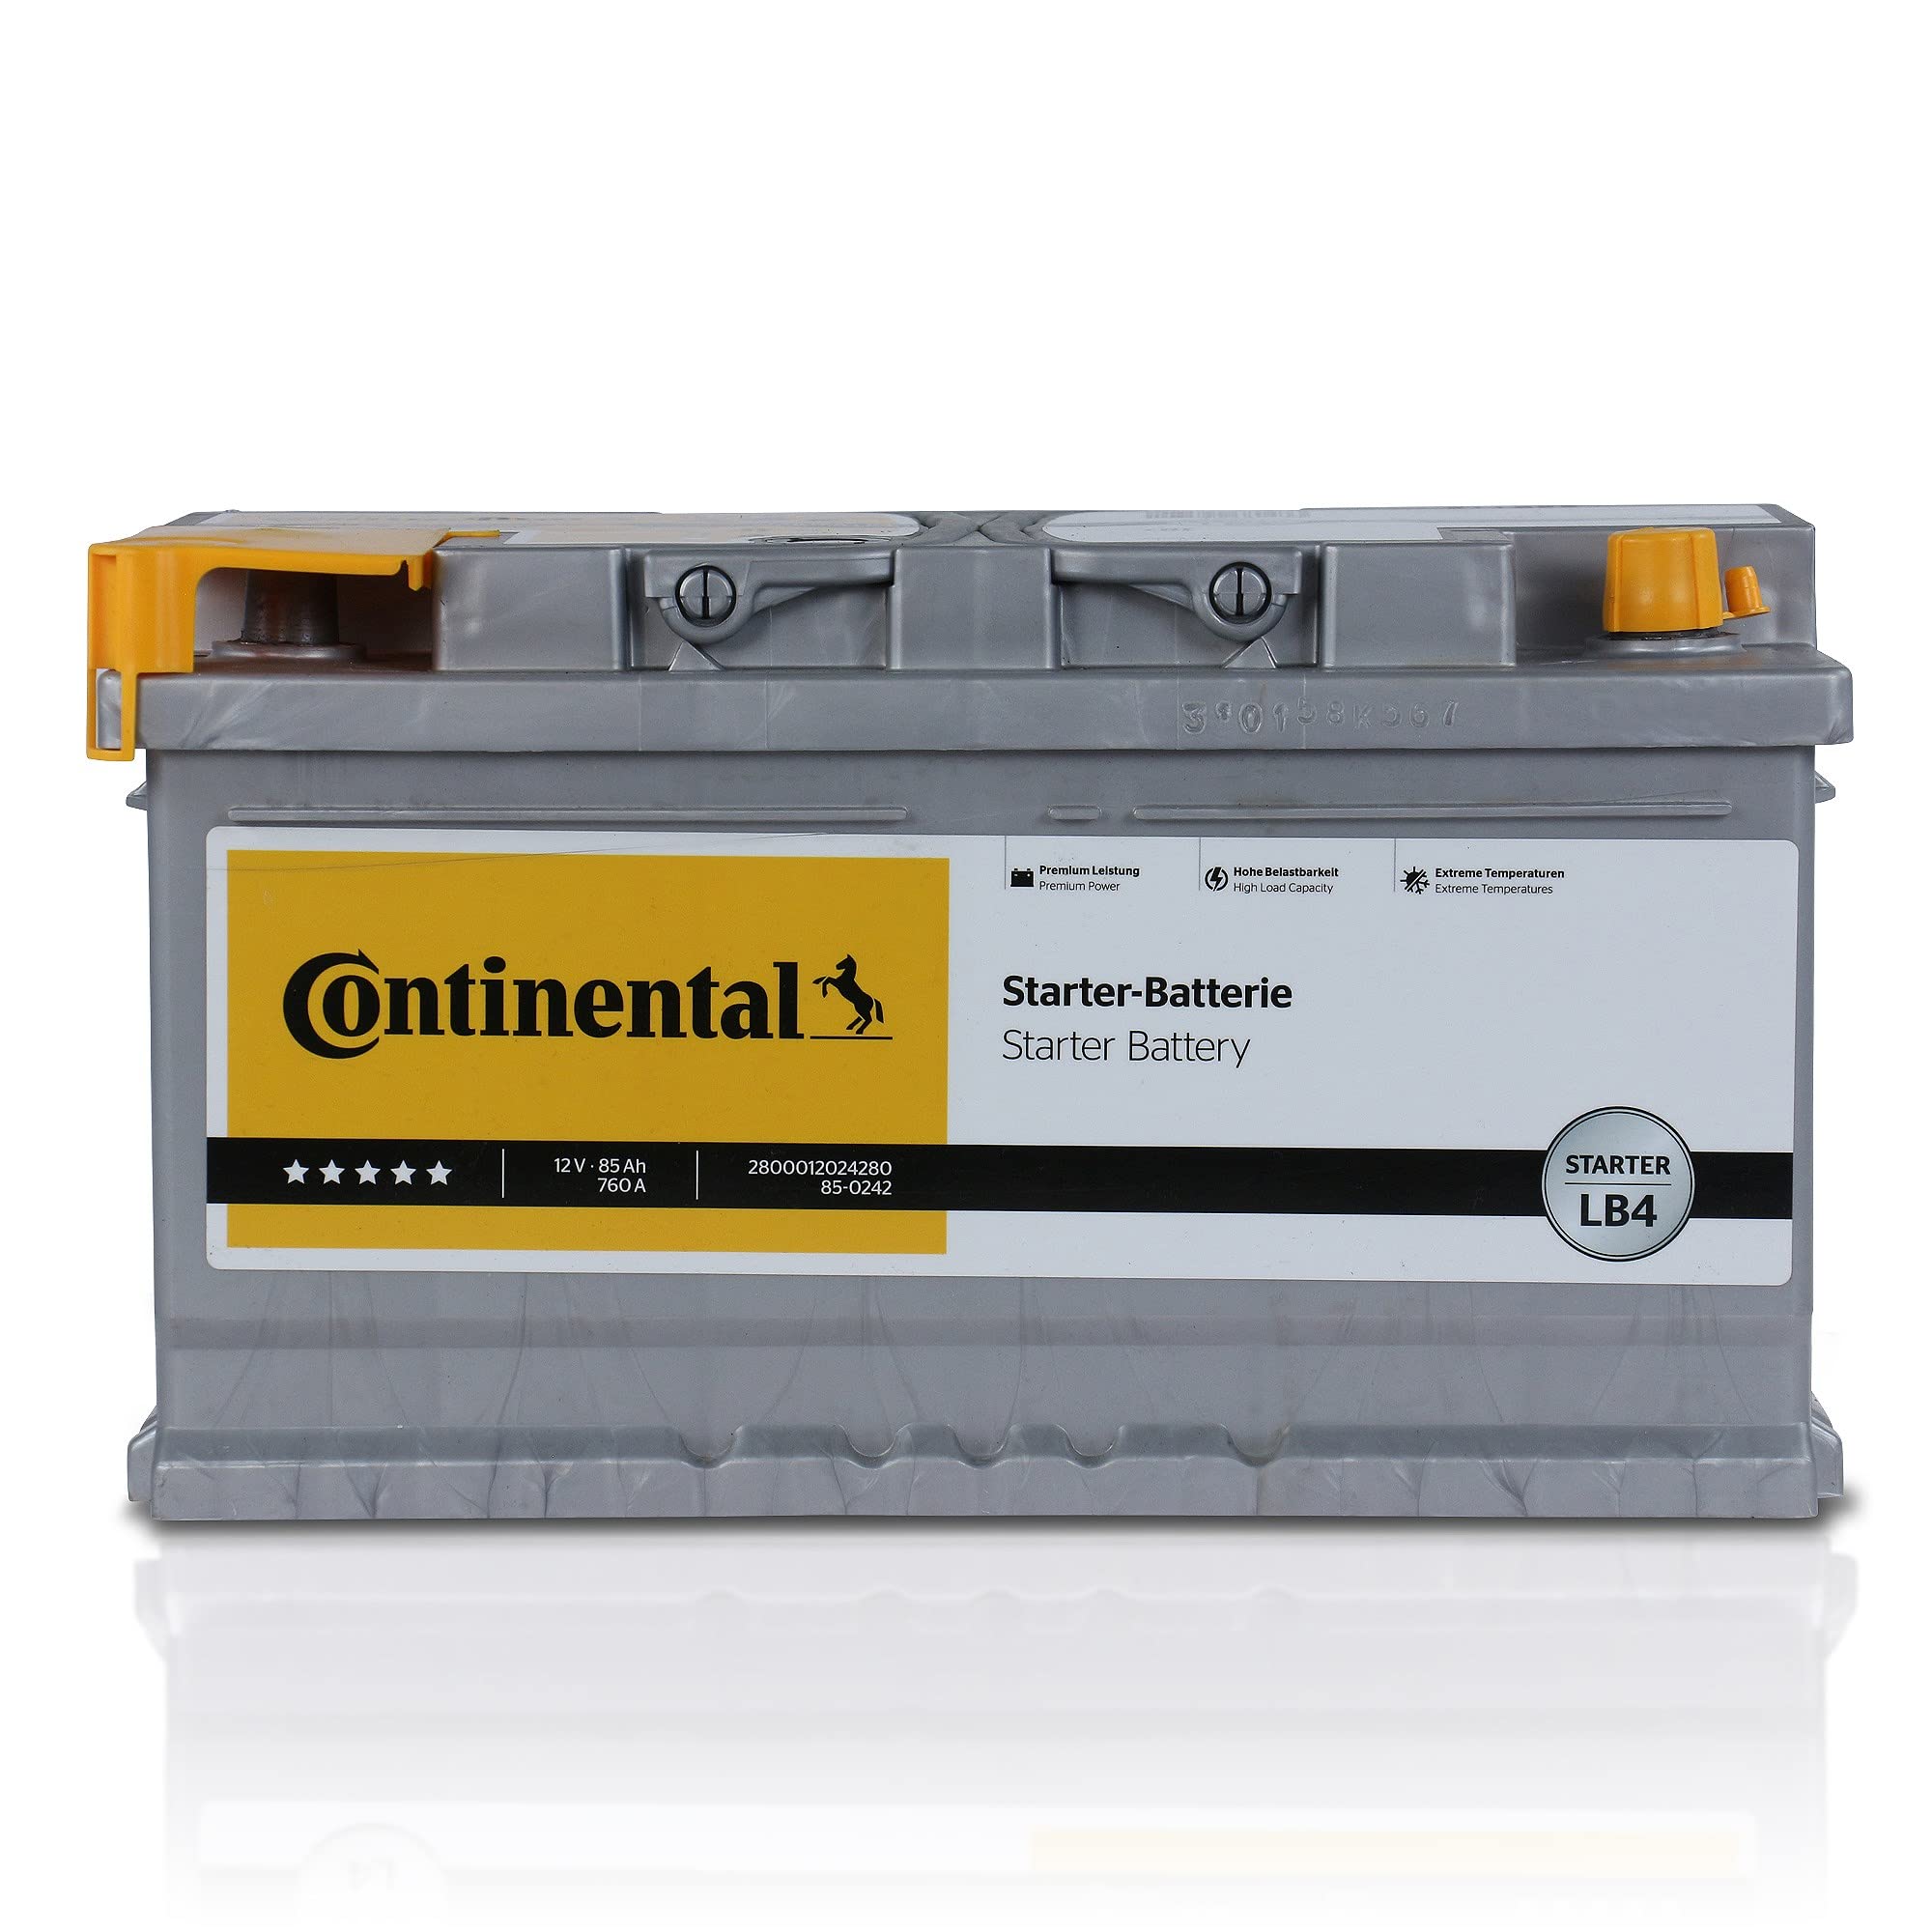 Autobatterie von Continental (2800012024280) Batterie Startanlage Akku, Akkumulator, Batterie,Autobatterie